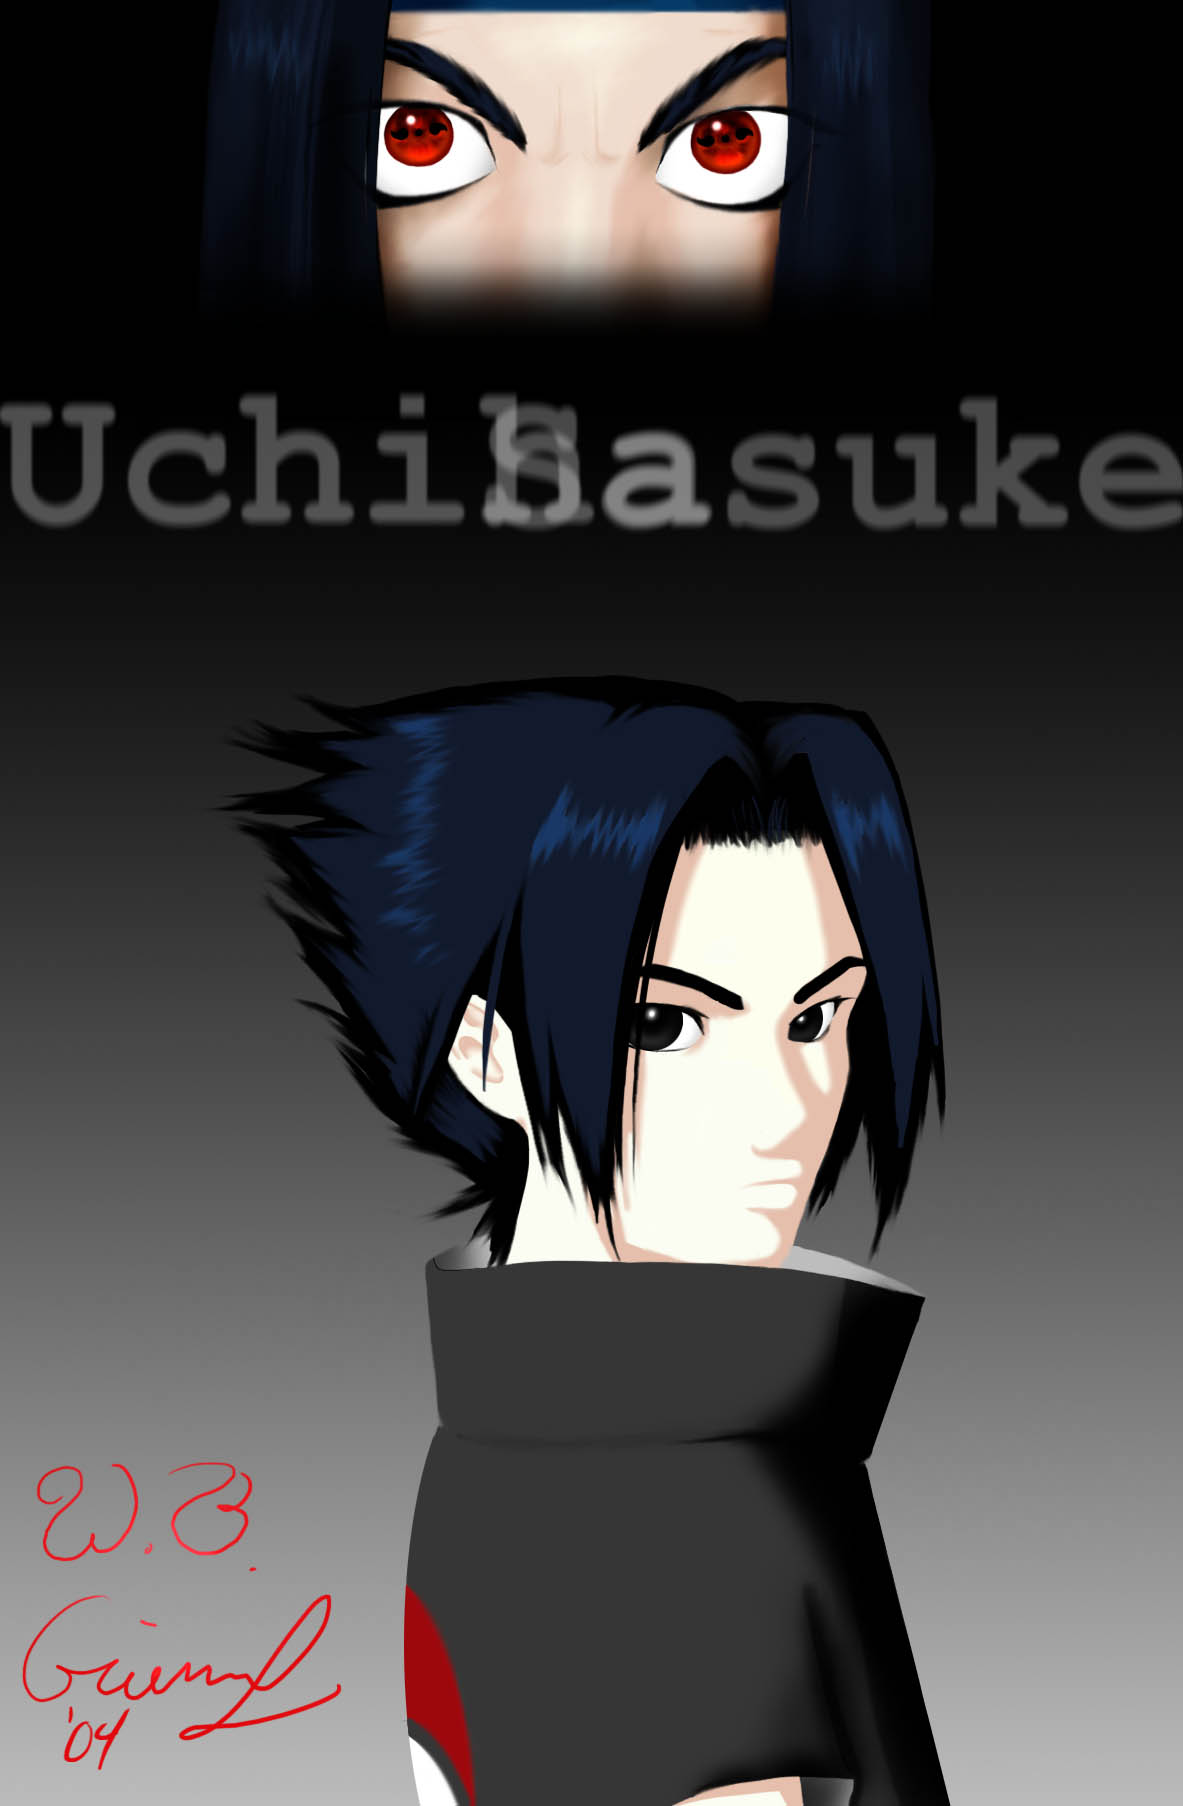 UchihaSasuke by WillieB